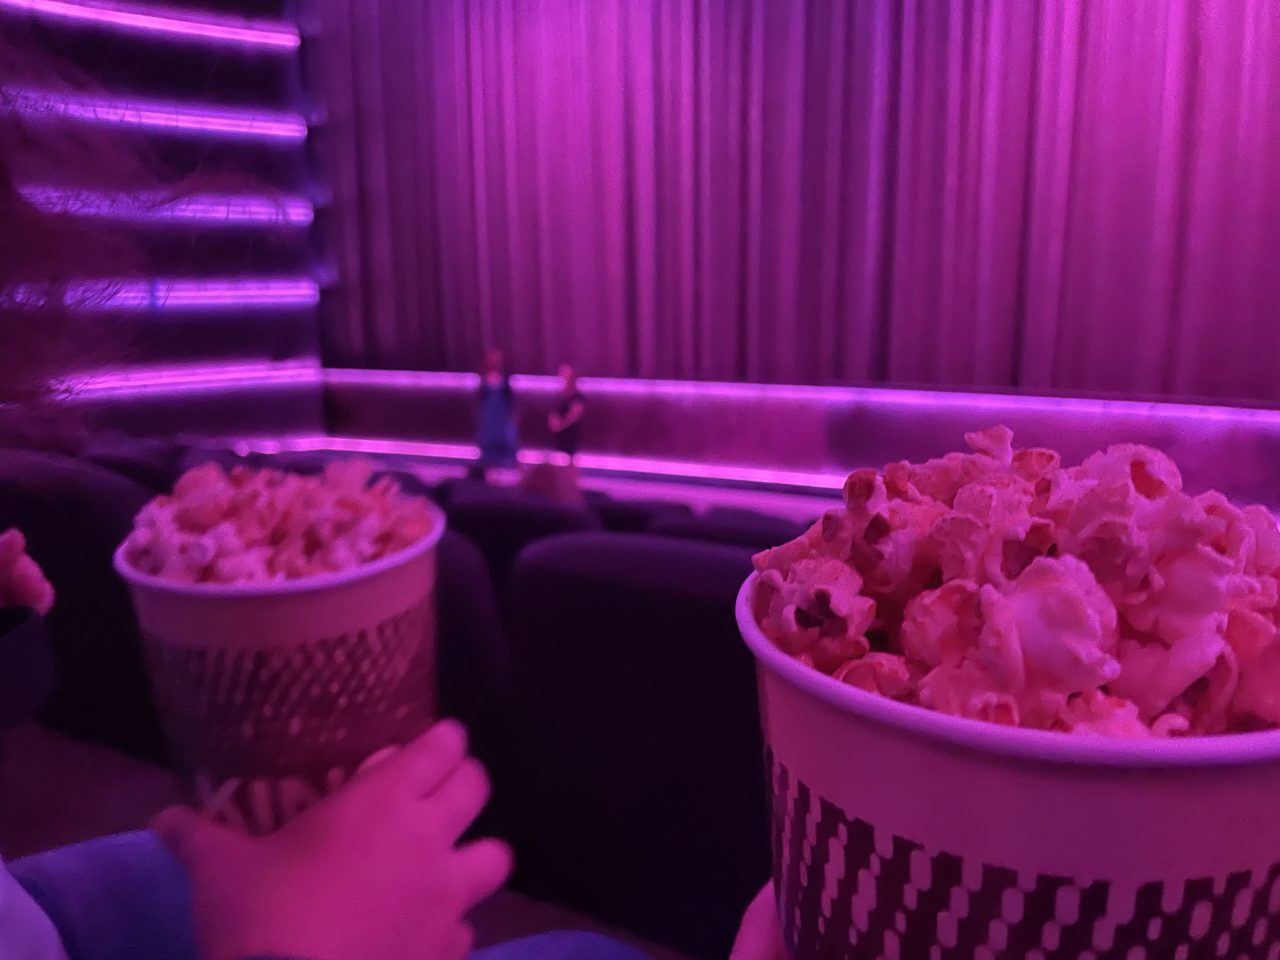 ein in rosa getauchter Kinosaal mit Vorhang vor der Leinwand; zwei gefüllte Popcornbecher im Vordergrund